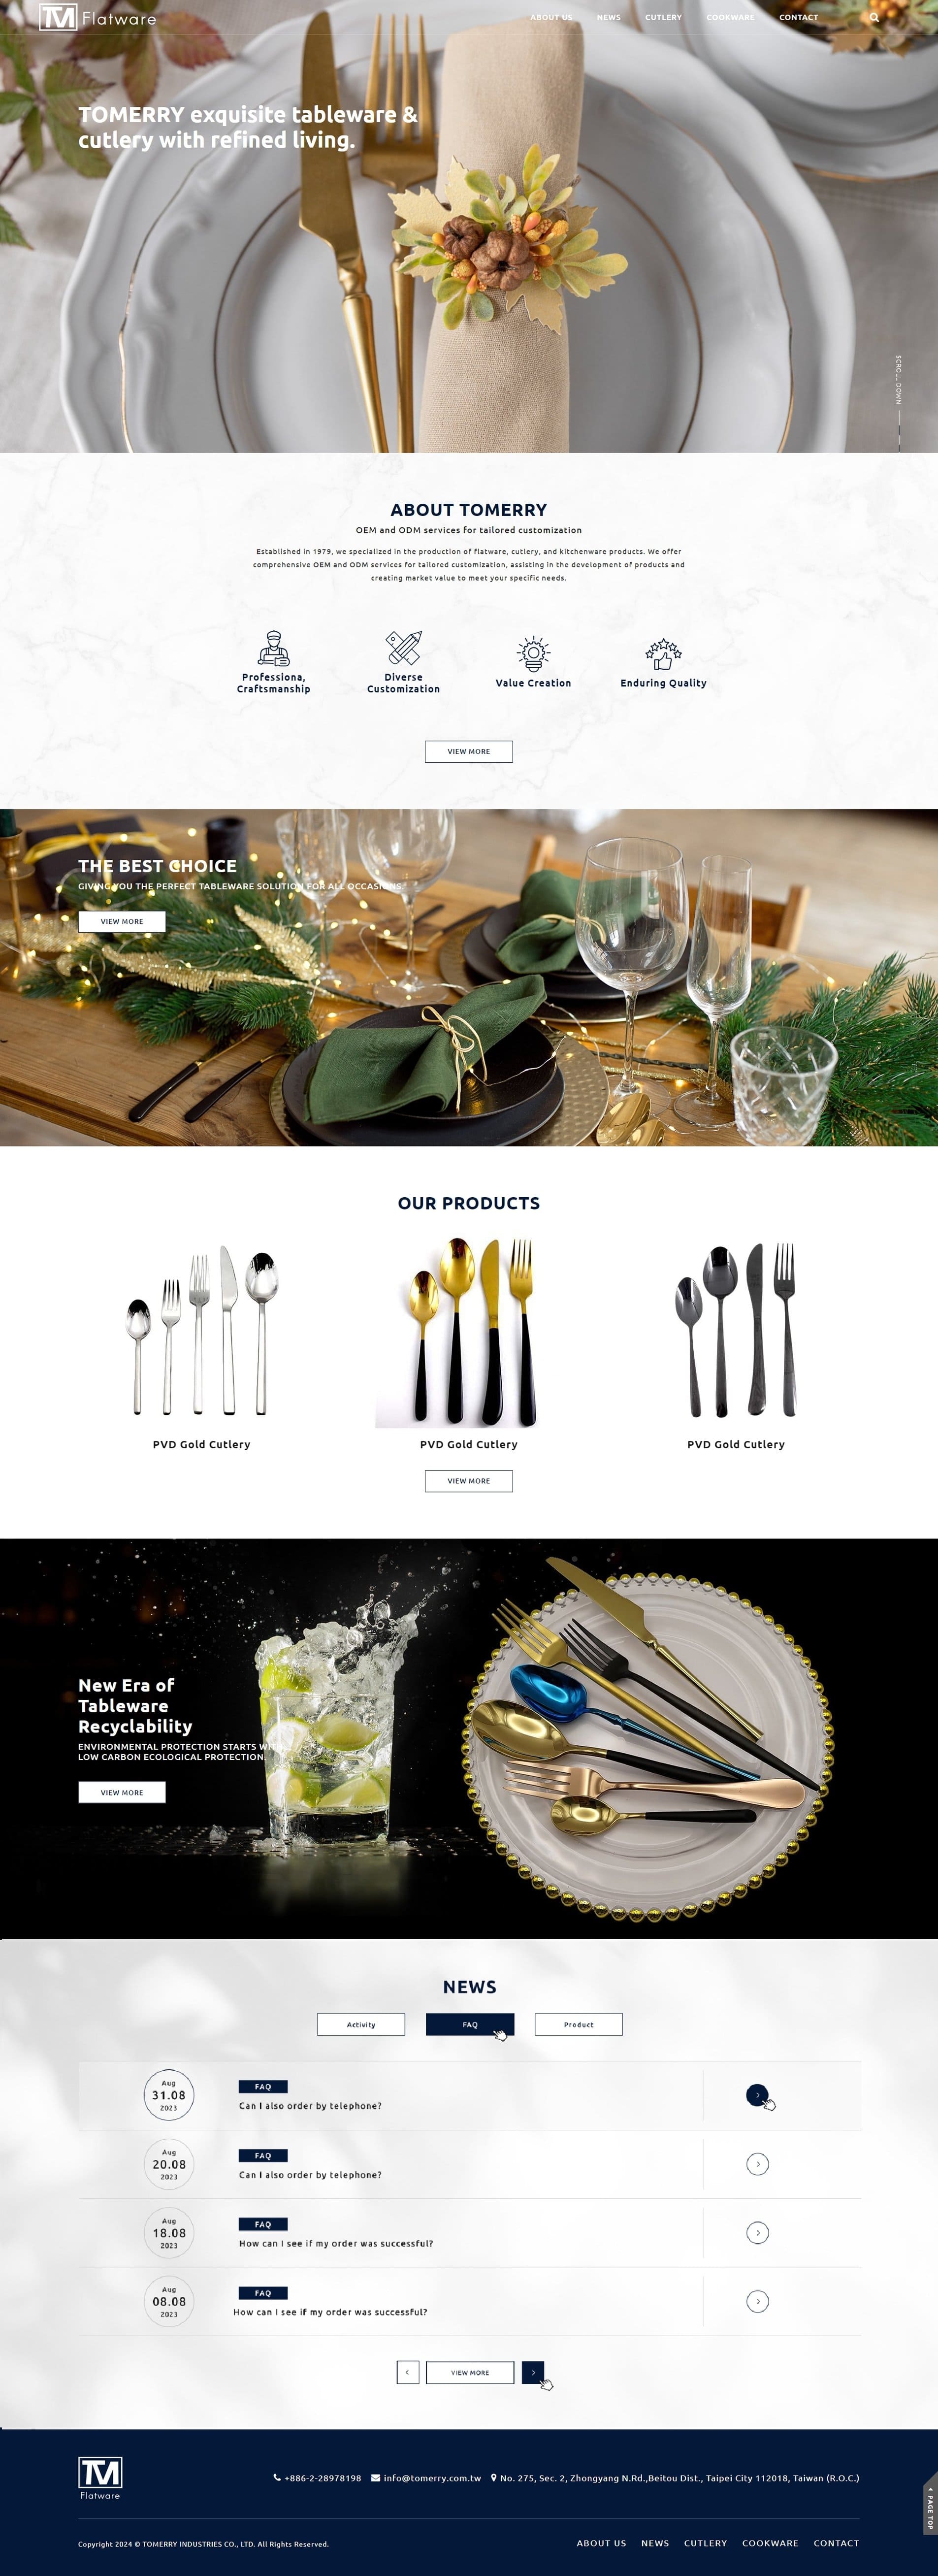 湯瑞企業-高級不鏽鋼餐具｜SEO、RWD 網頁/網站設計範例